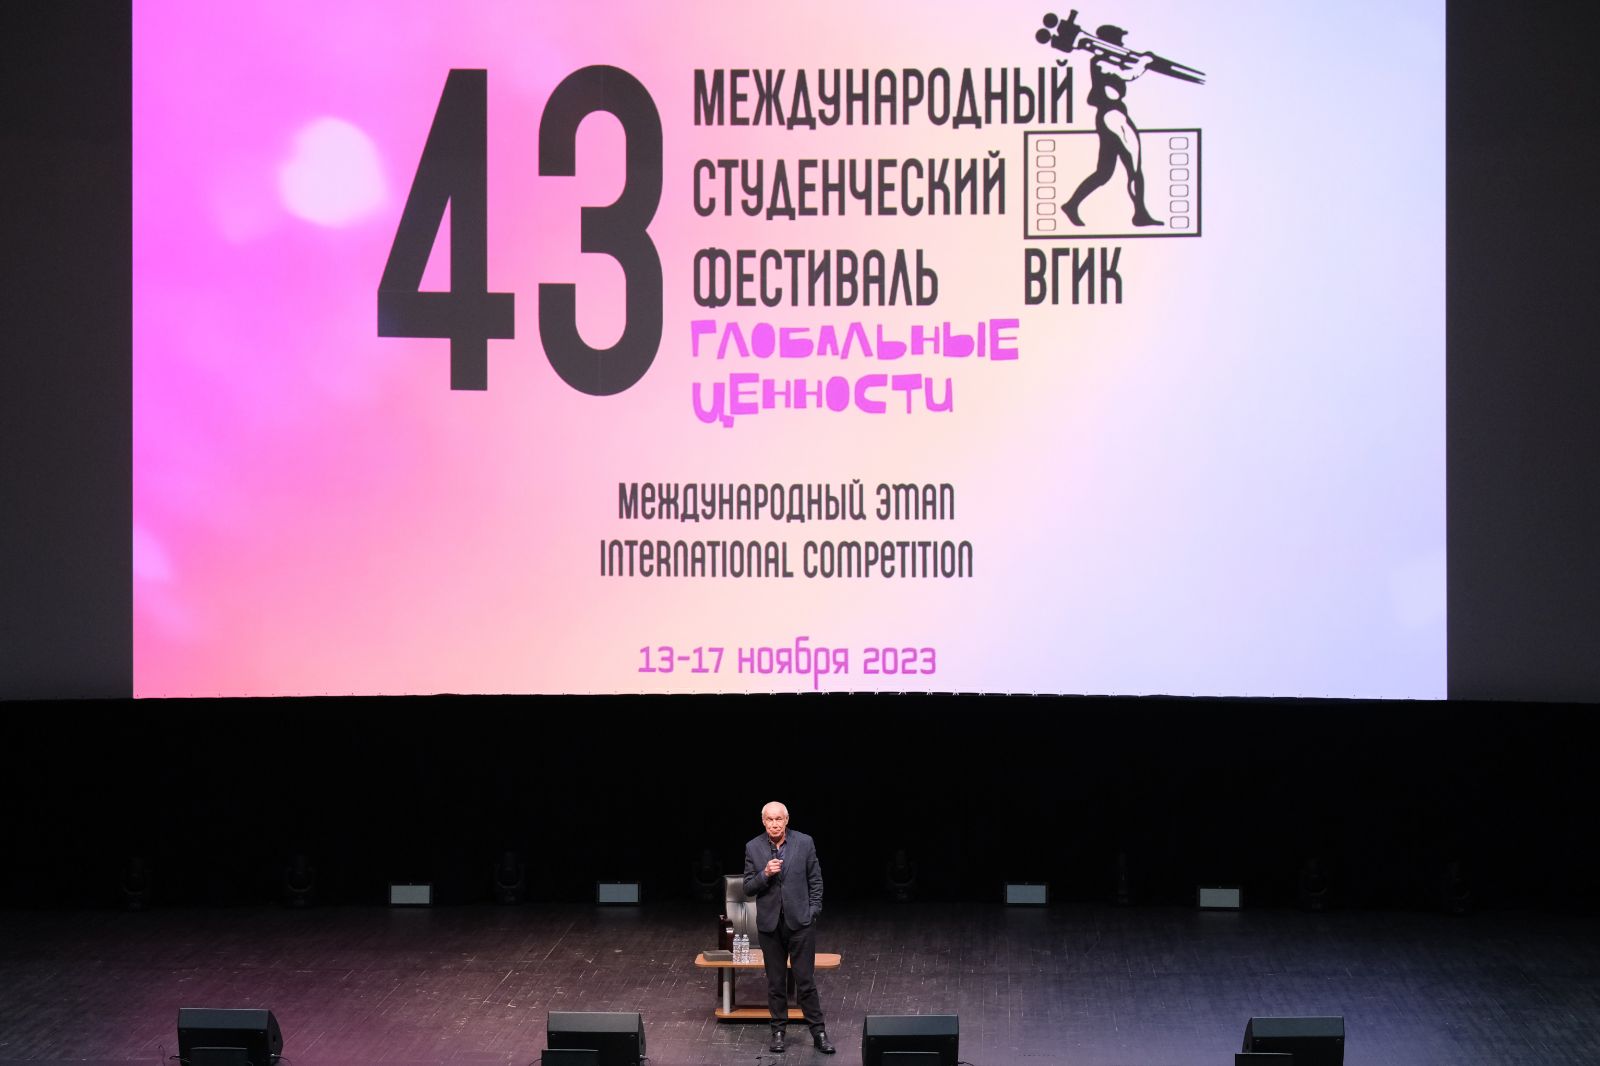 В Москве при поддержке НФПП проходит 43-й Международный студенческий фестиваль ВГИК